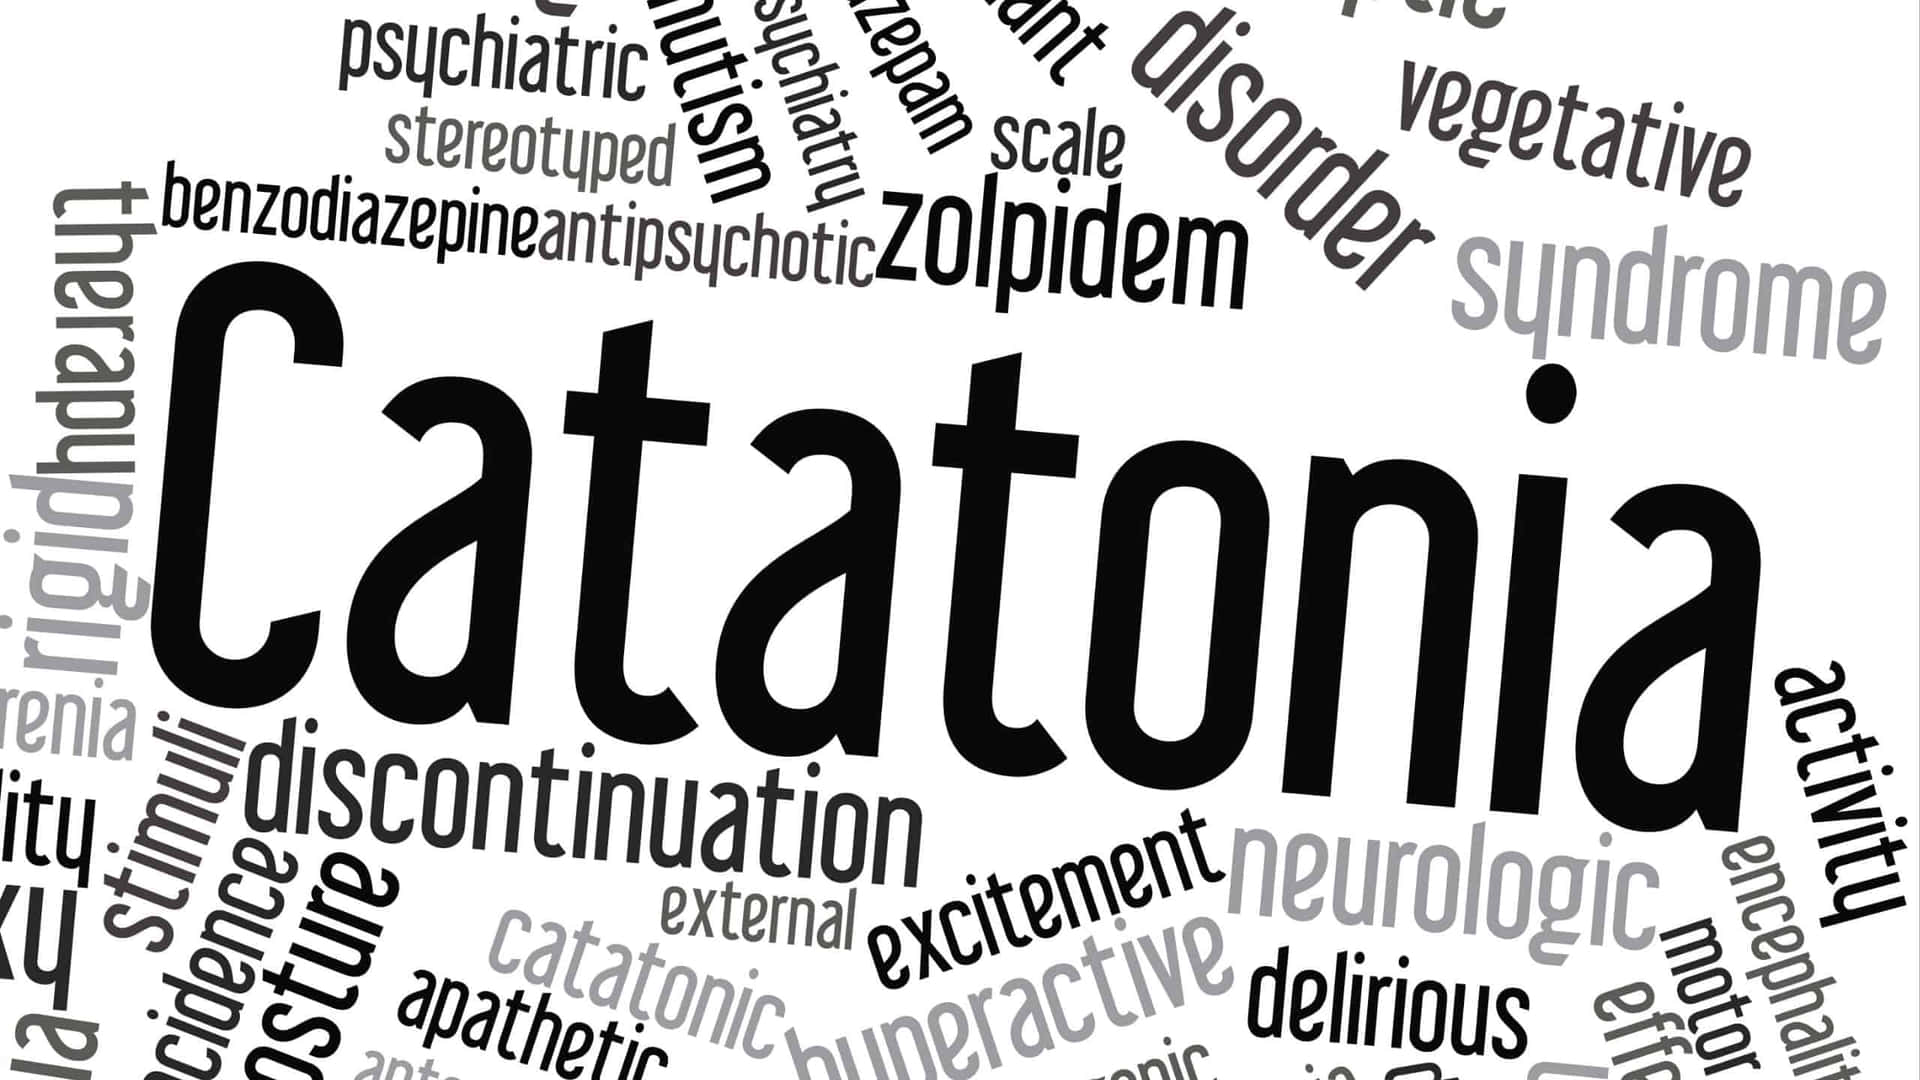 Catatonic In Catatonia Word Cloud